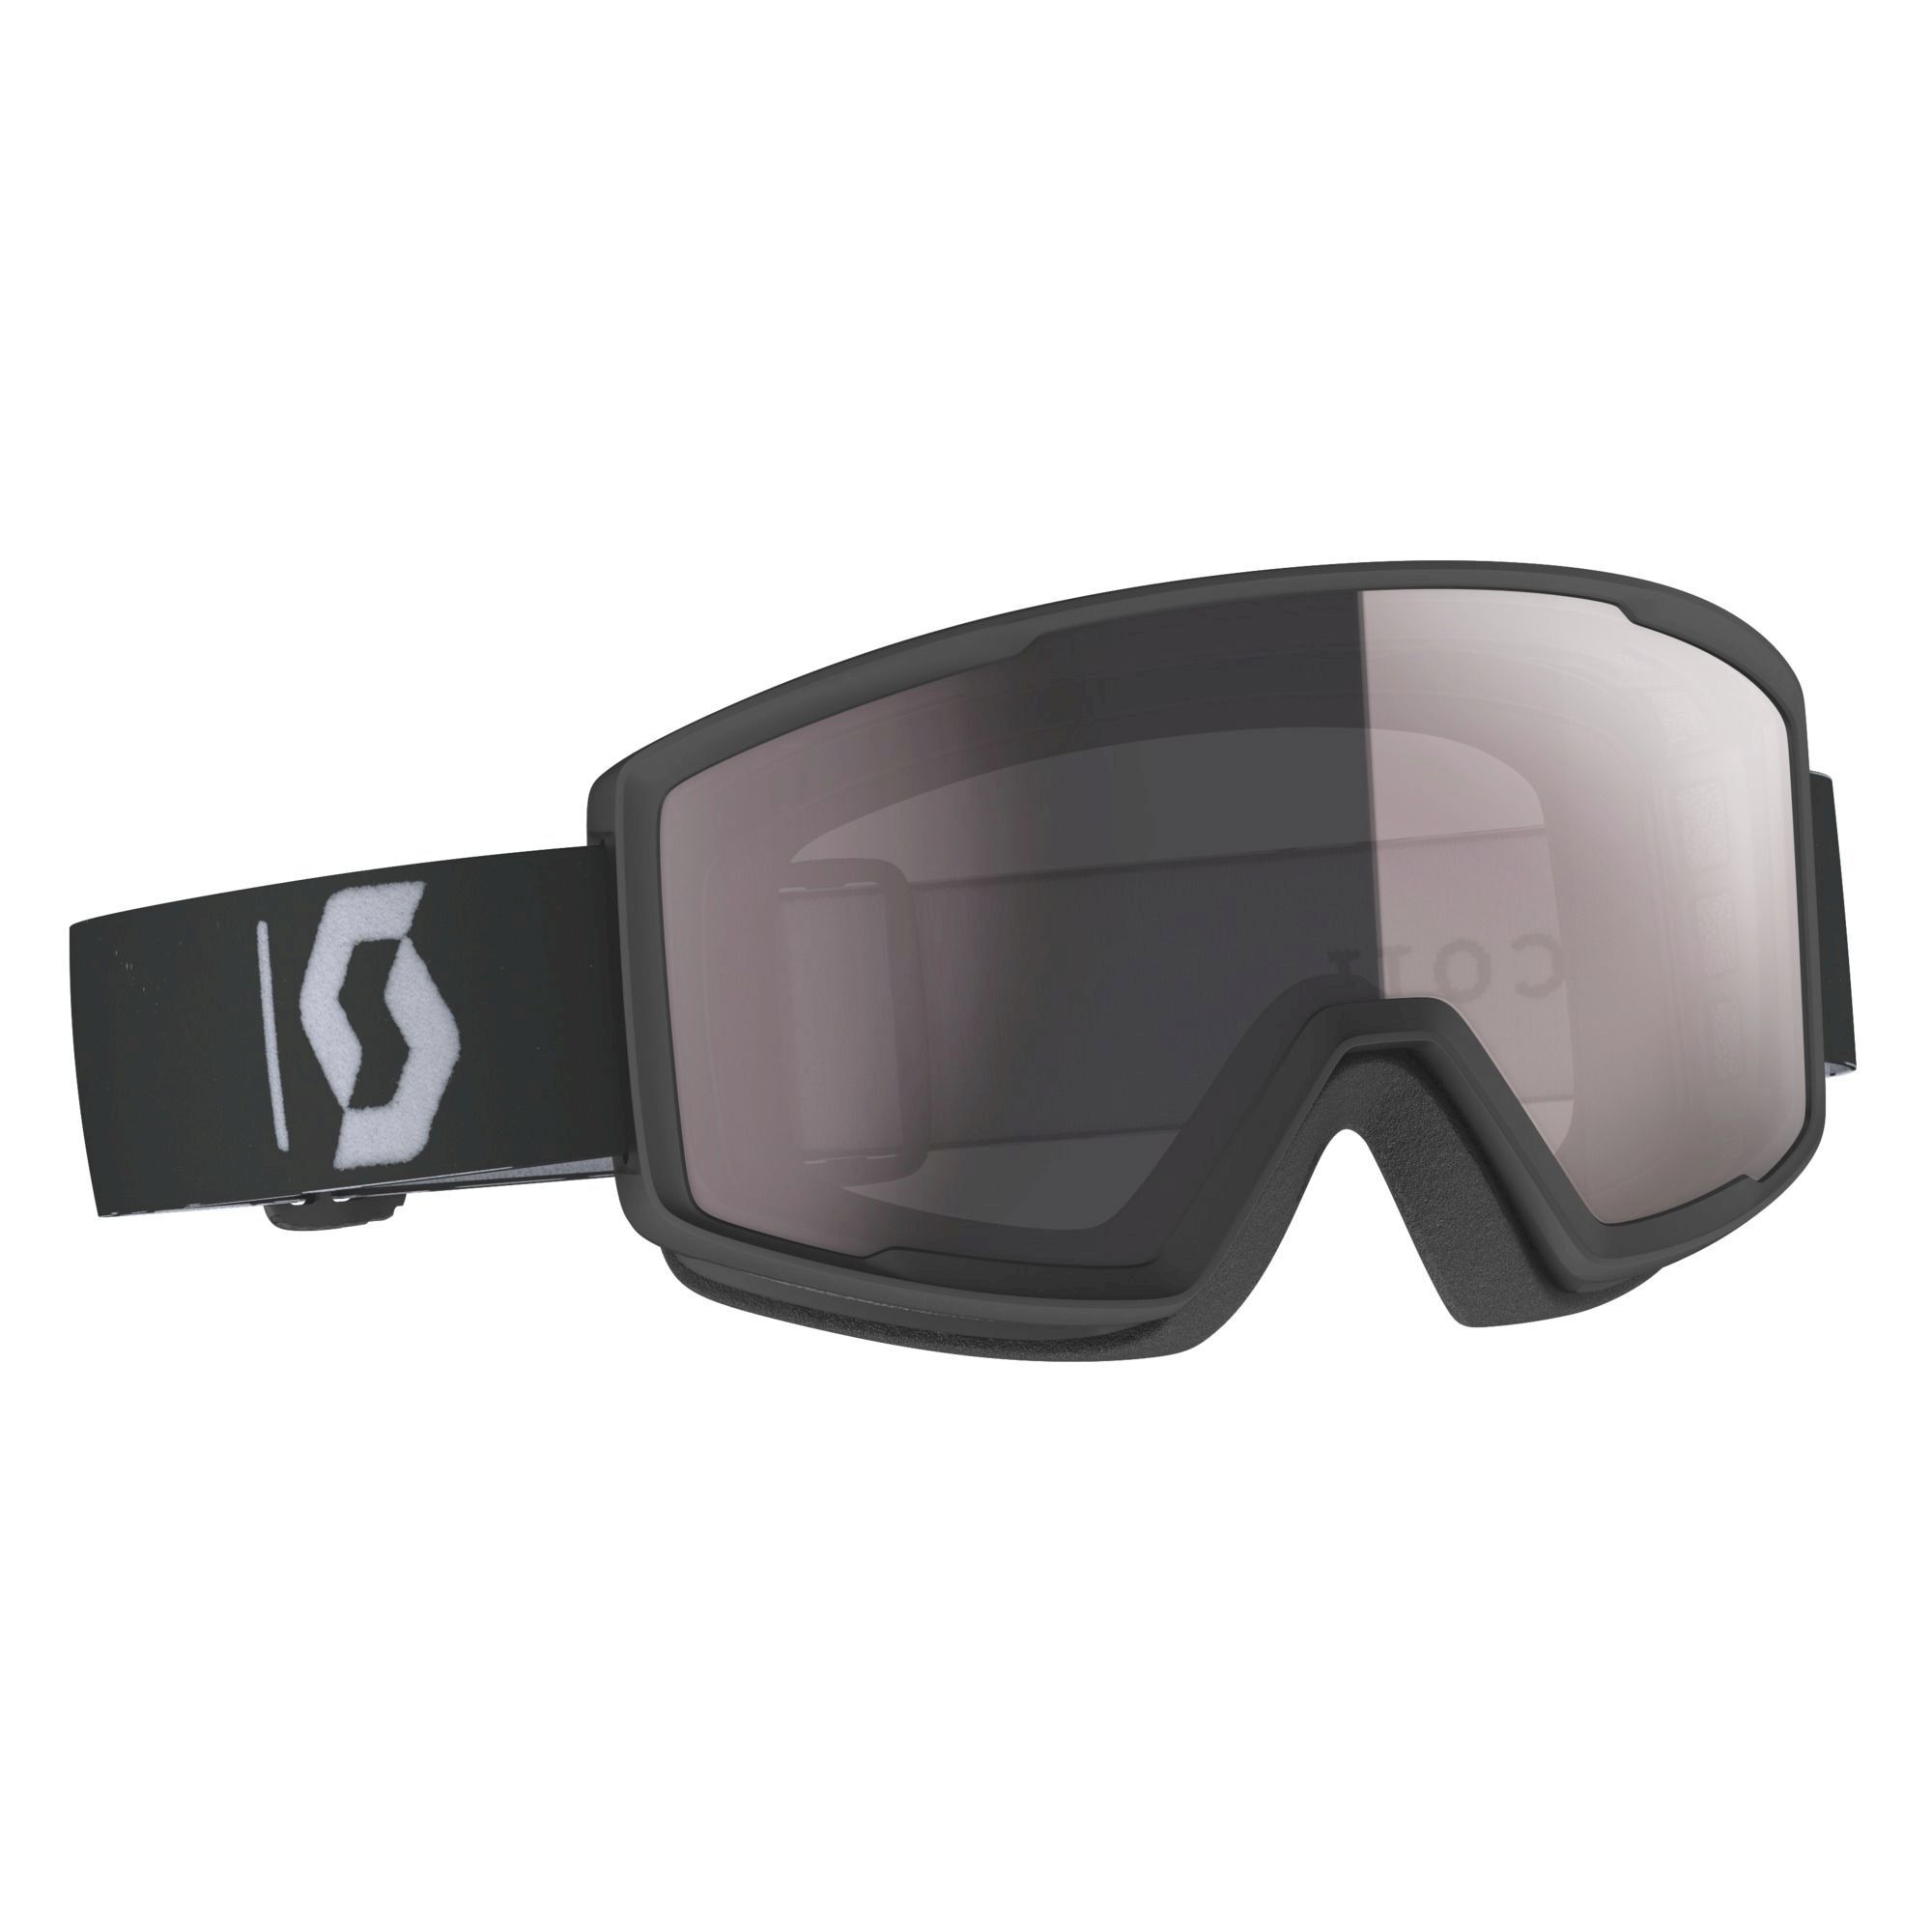 Scott Factor pro - Ski goggles